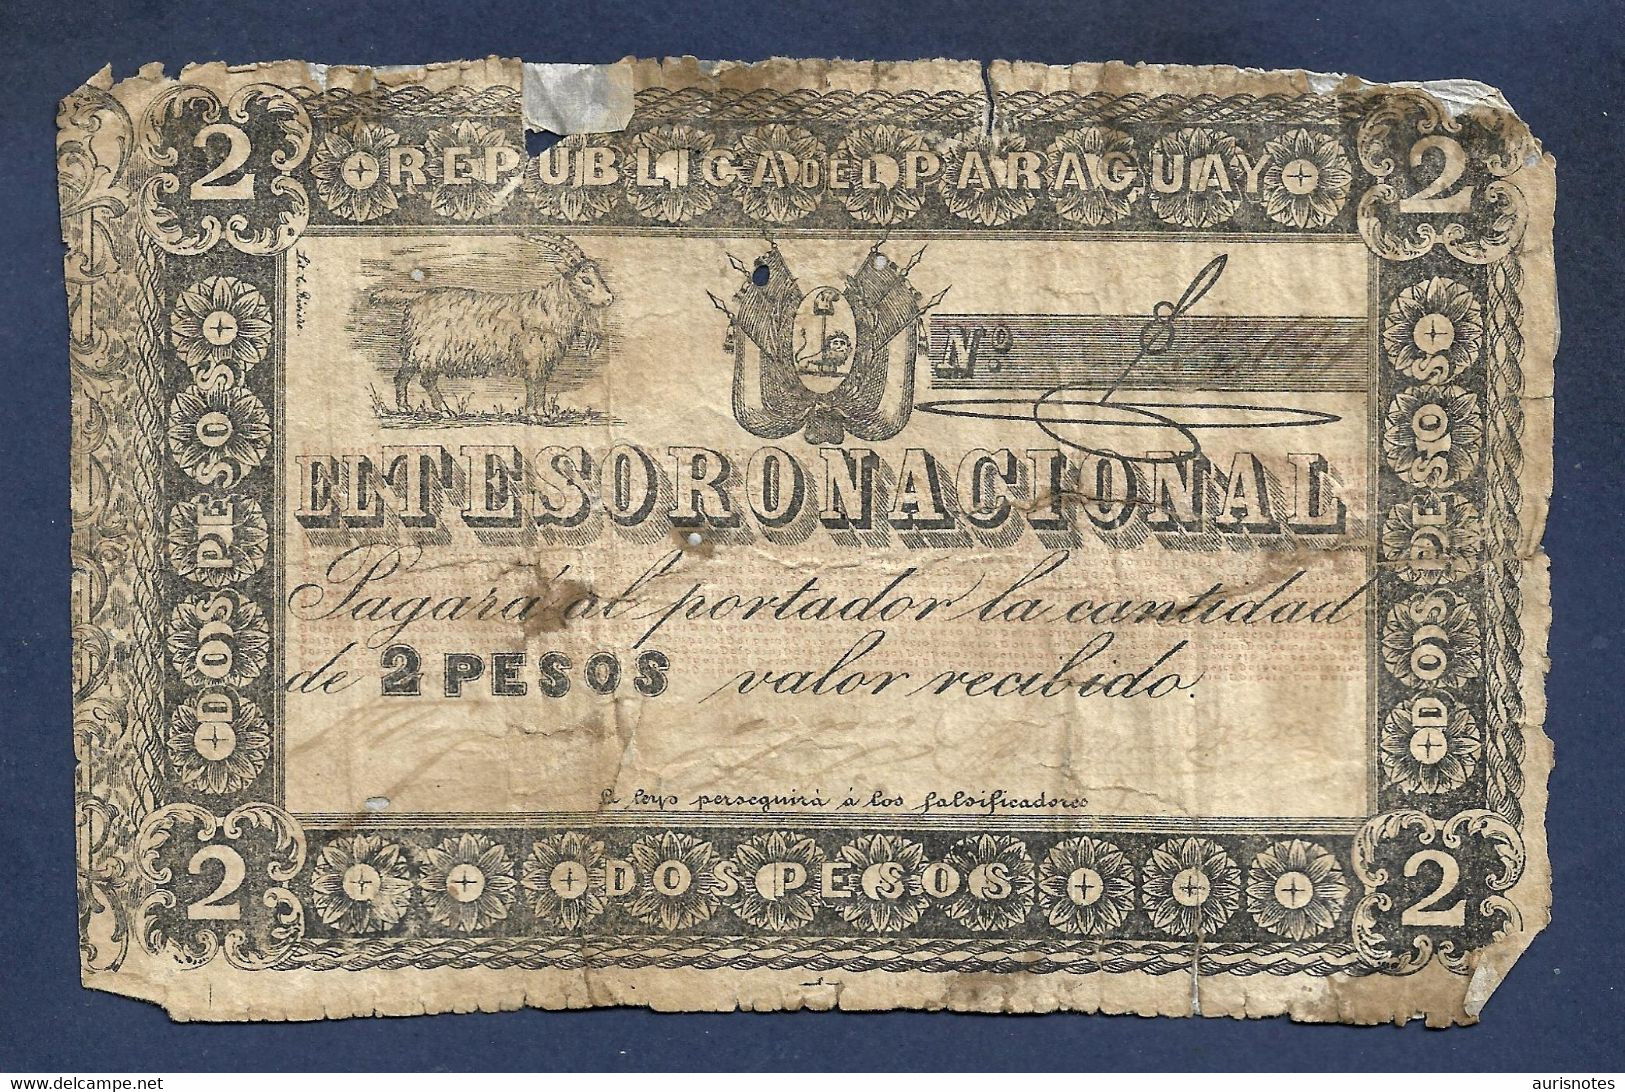 Paraguay 2 Pesos 1860 Rare ND P-12 Fine - Paraguay